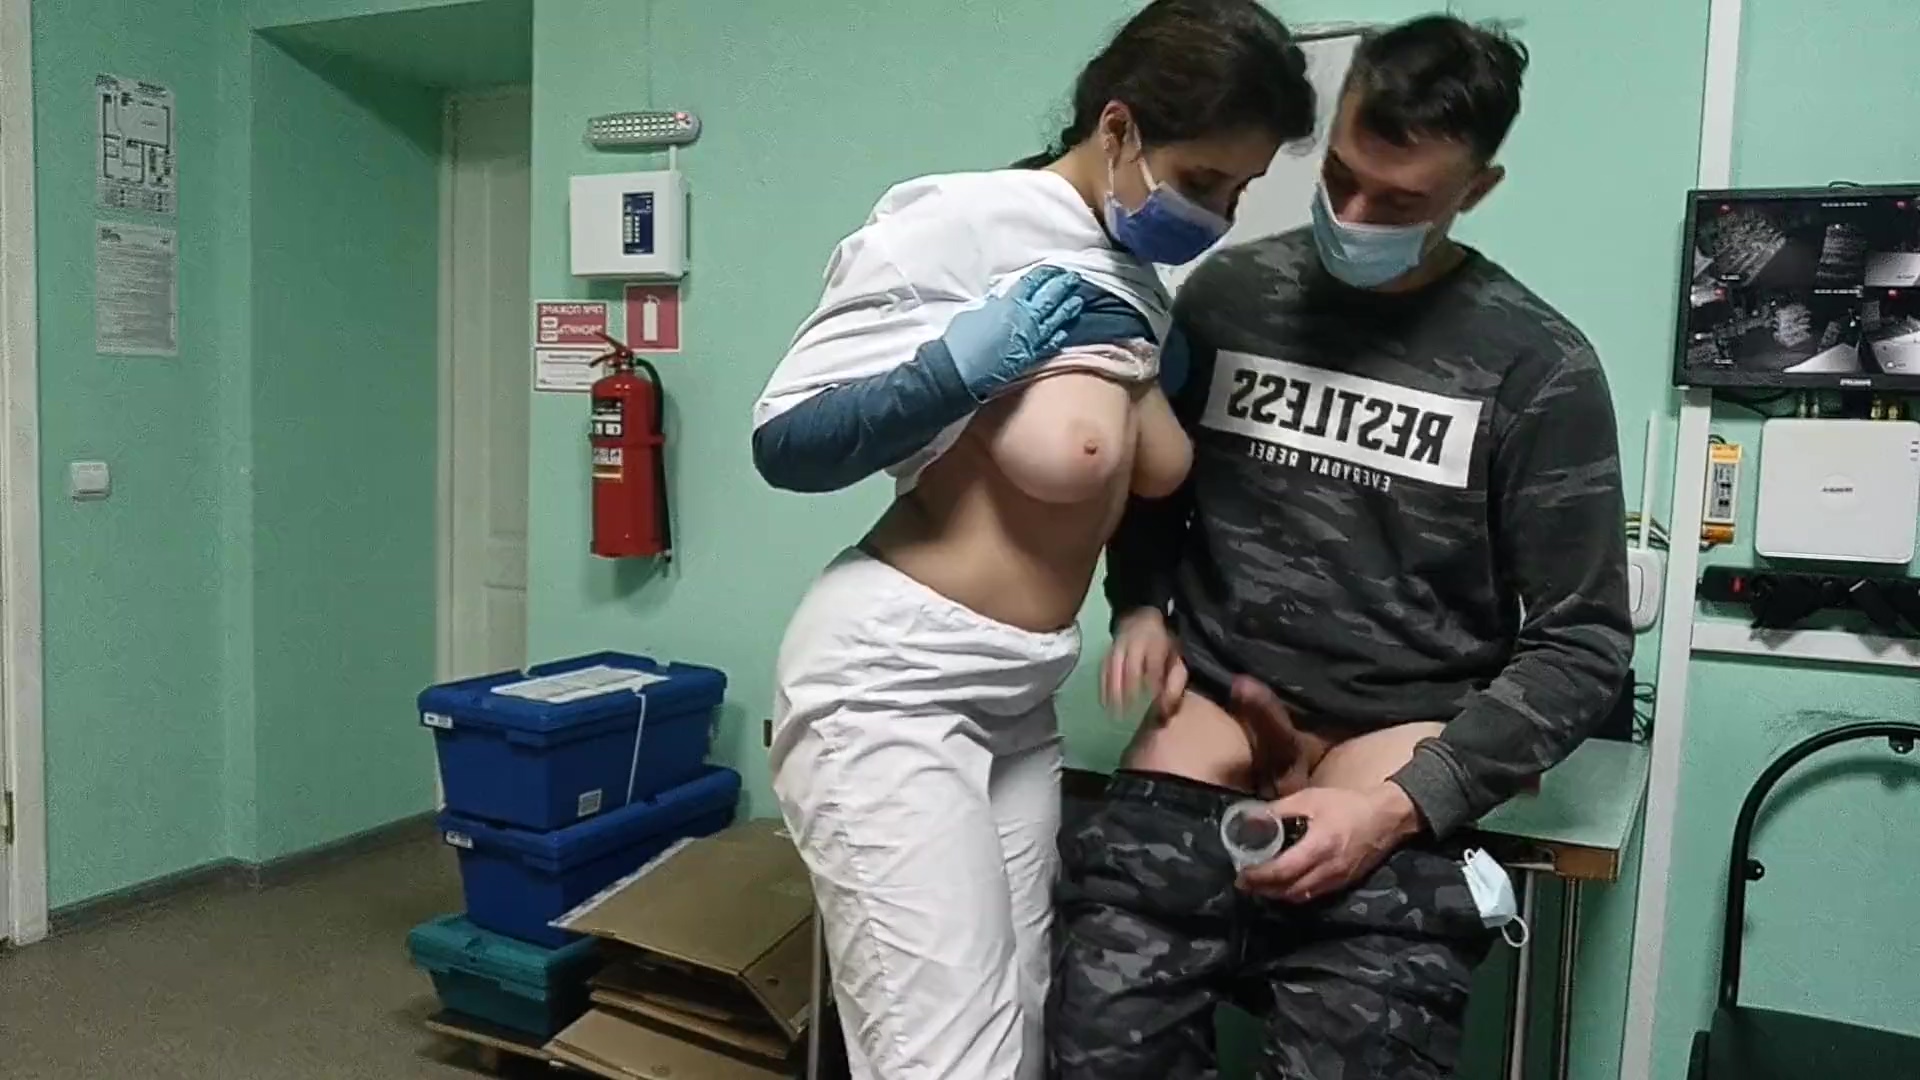 Die vollbusige Krankenschwester überprüfte den Steifen des Typen vor dem schnellen BJ im Krankenhaus Foto Foto